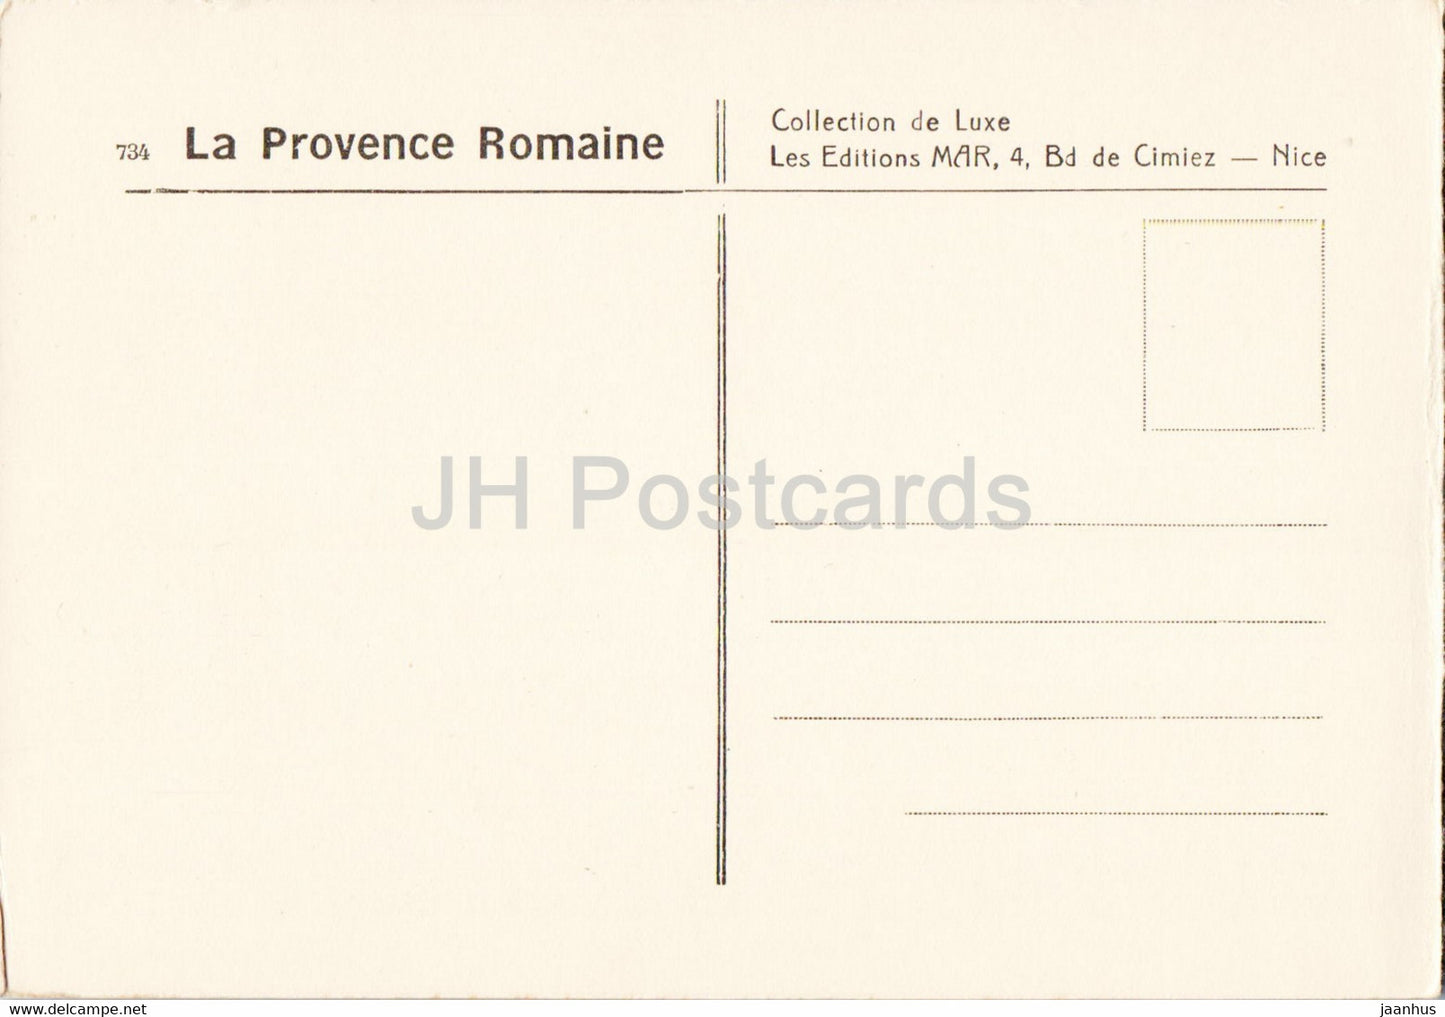 Le Moulin de Daudet - La Provence Romaine - Windmühle - alte Postkarte - Frankreich - unbenutzt